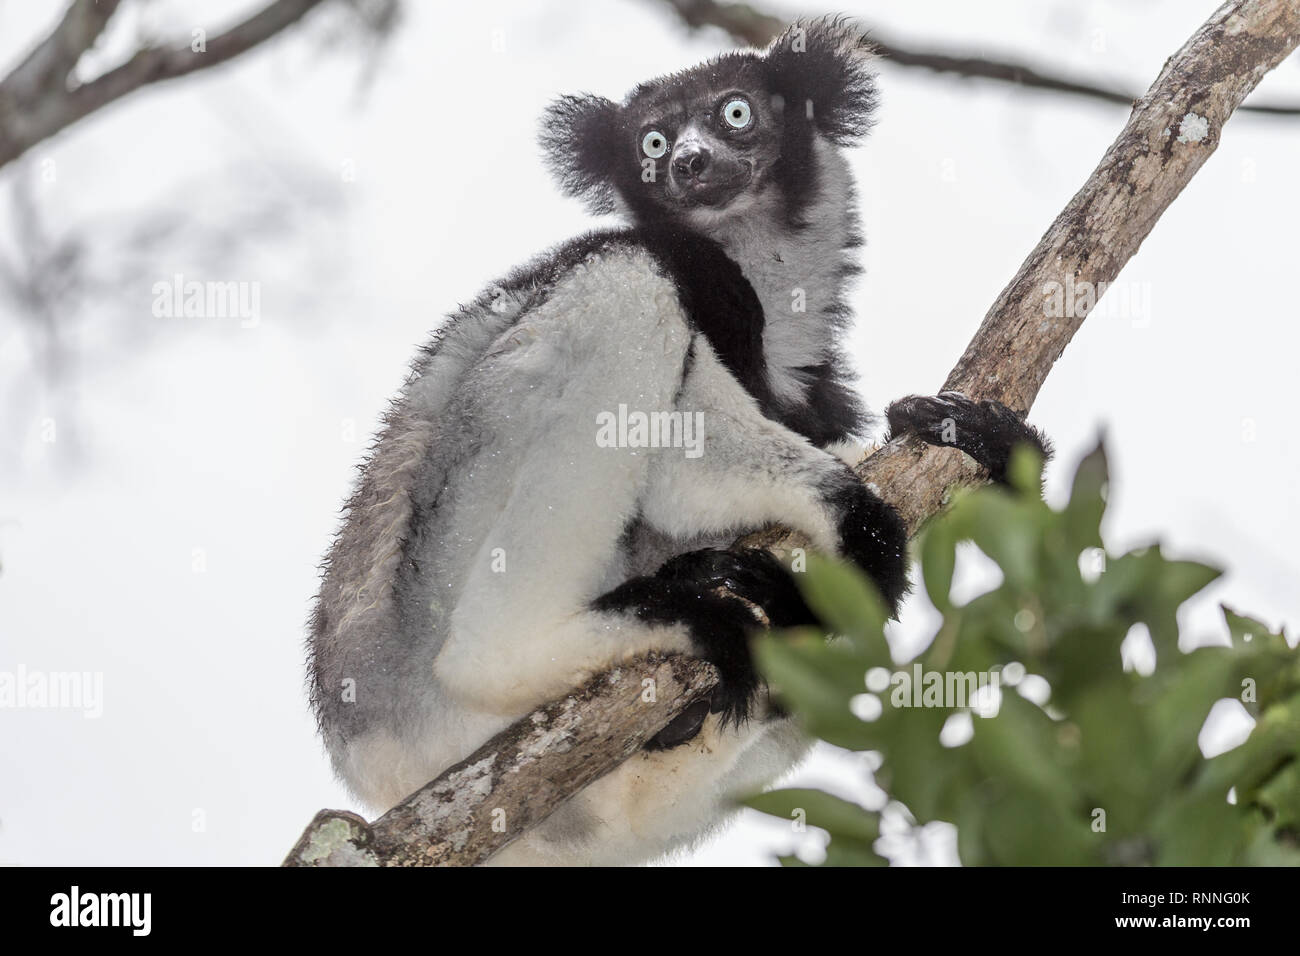 Lémurien Indri, alias Babakoto, Tonga soa, Réserve de parc national Parc Mantadia- Andasibe Madagascar sous la pluie Banque D'Images